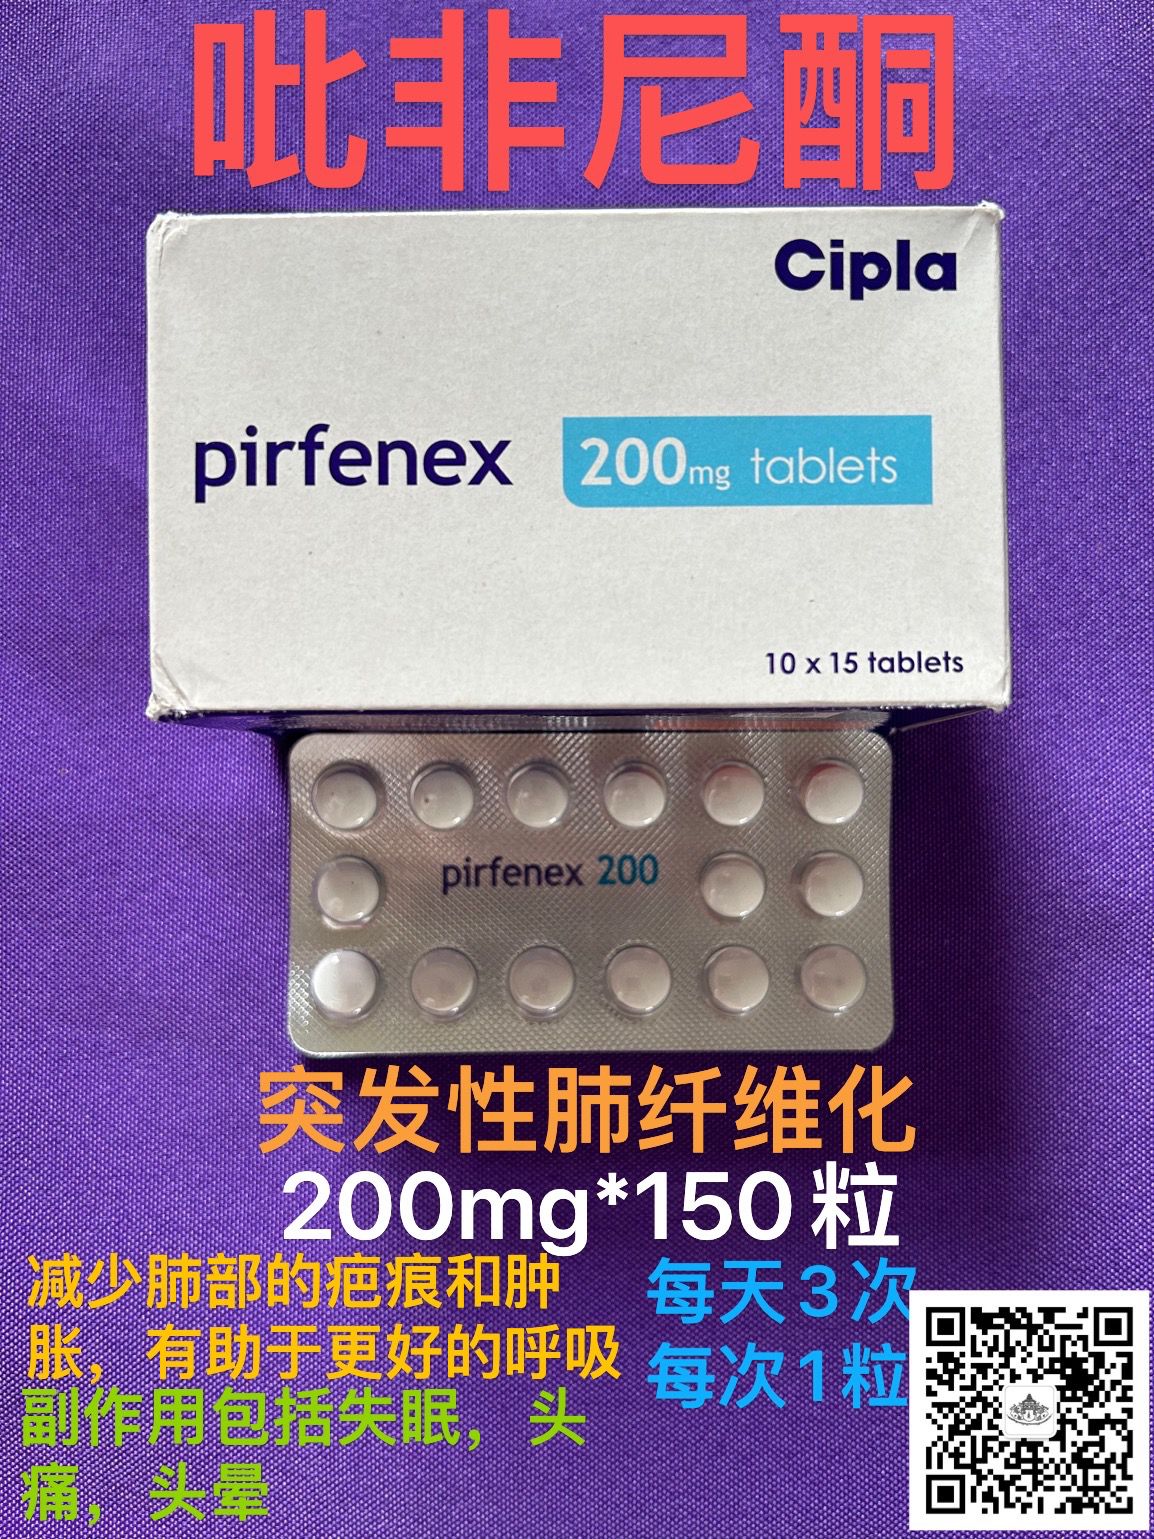 吡非尼酮(Pirfenidone)pirfenex可以用医保吗